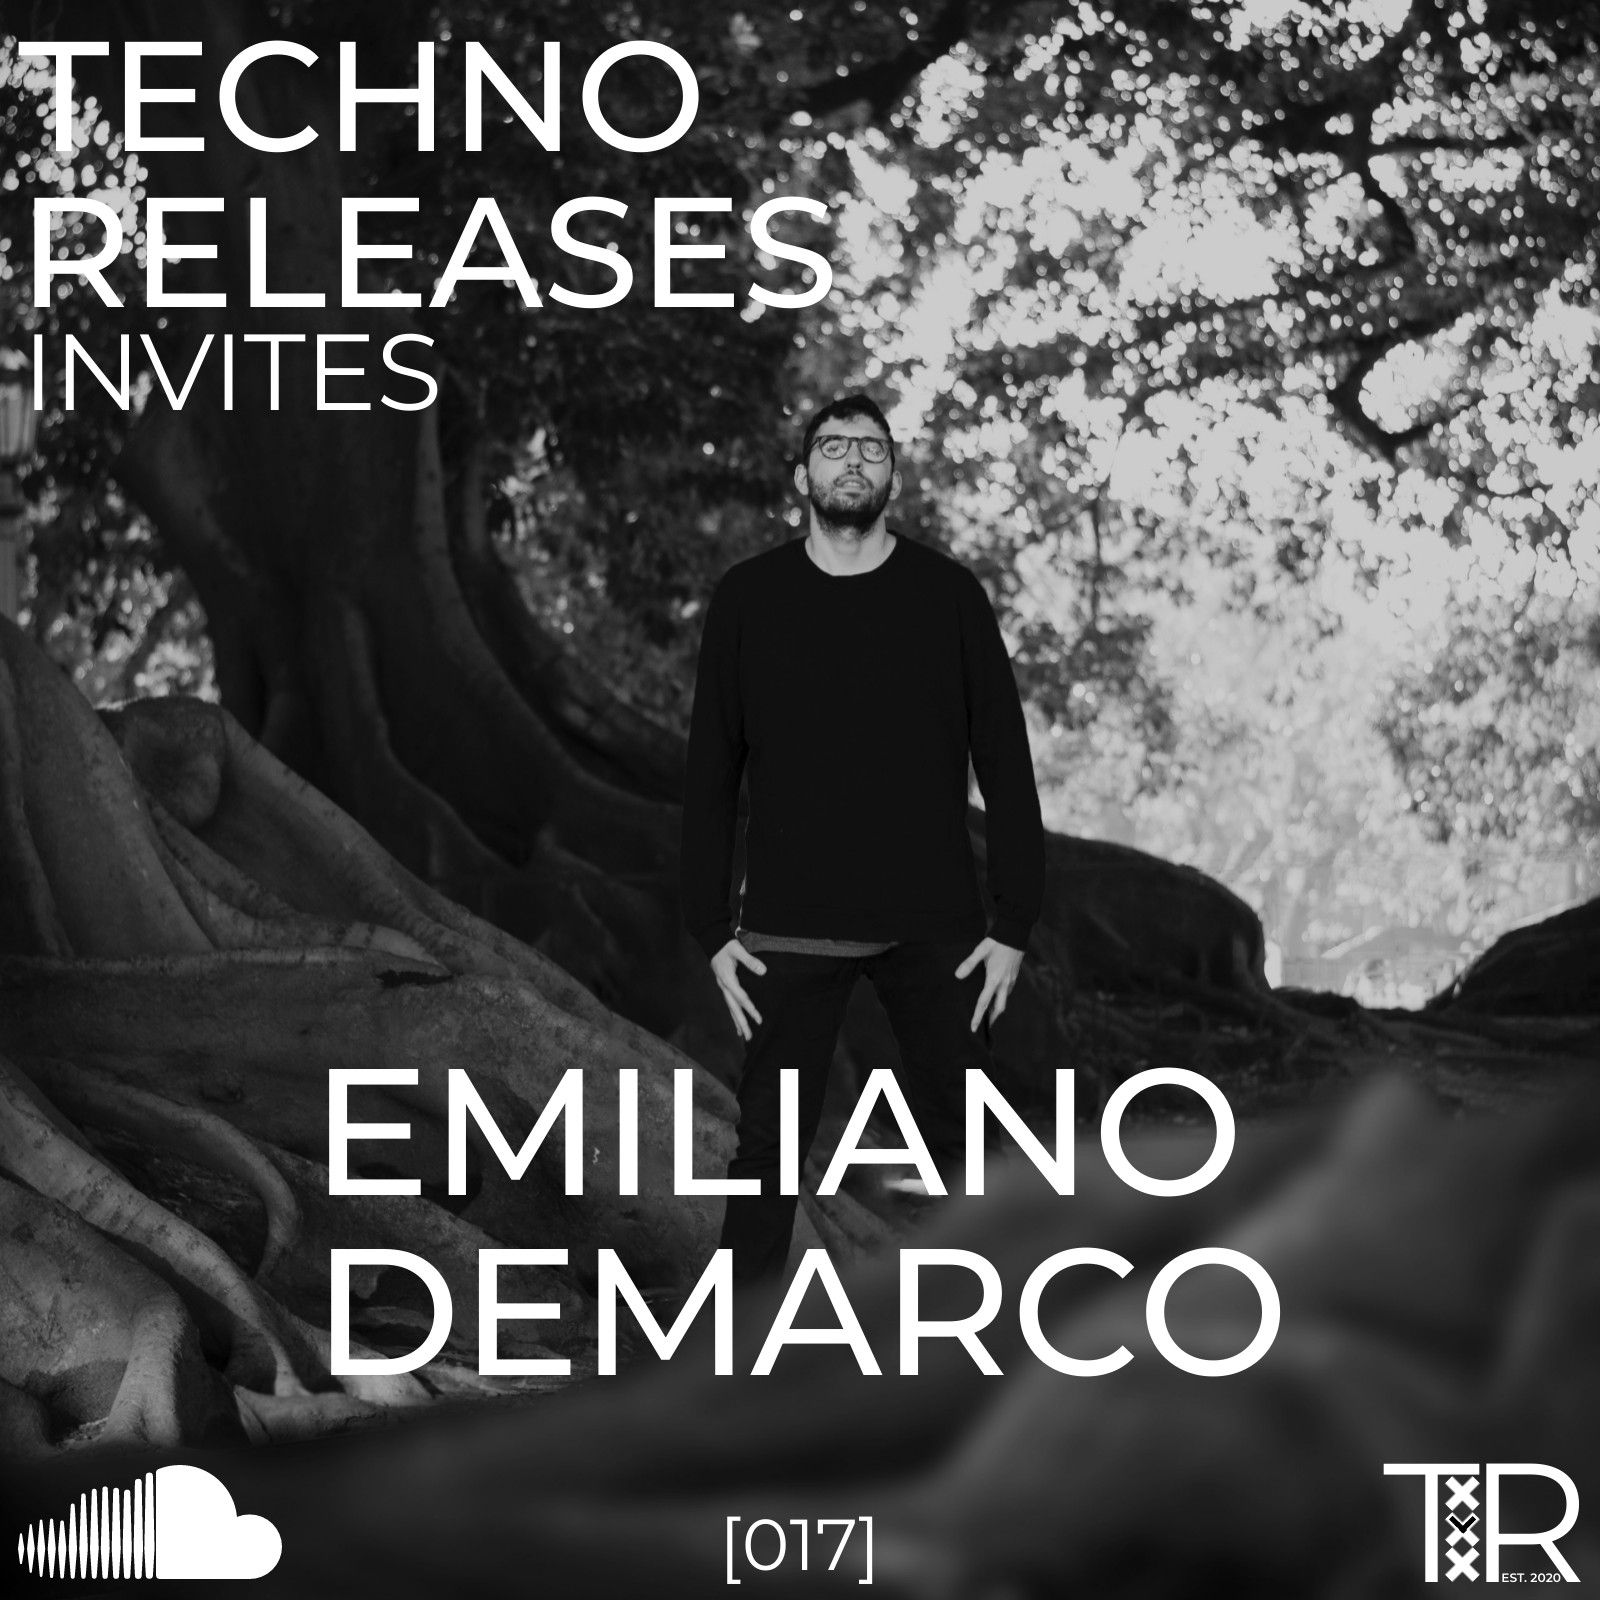 Khoasolla Techno Releases Invites Emiliano Demarco - [017]